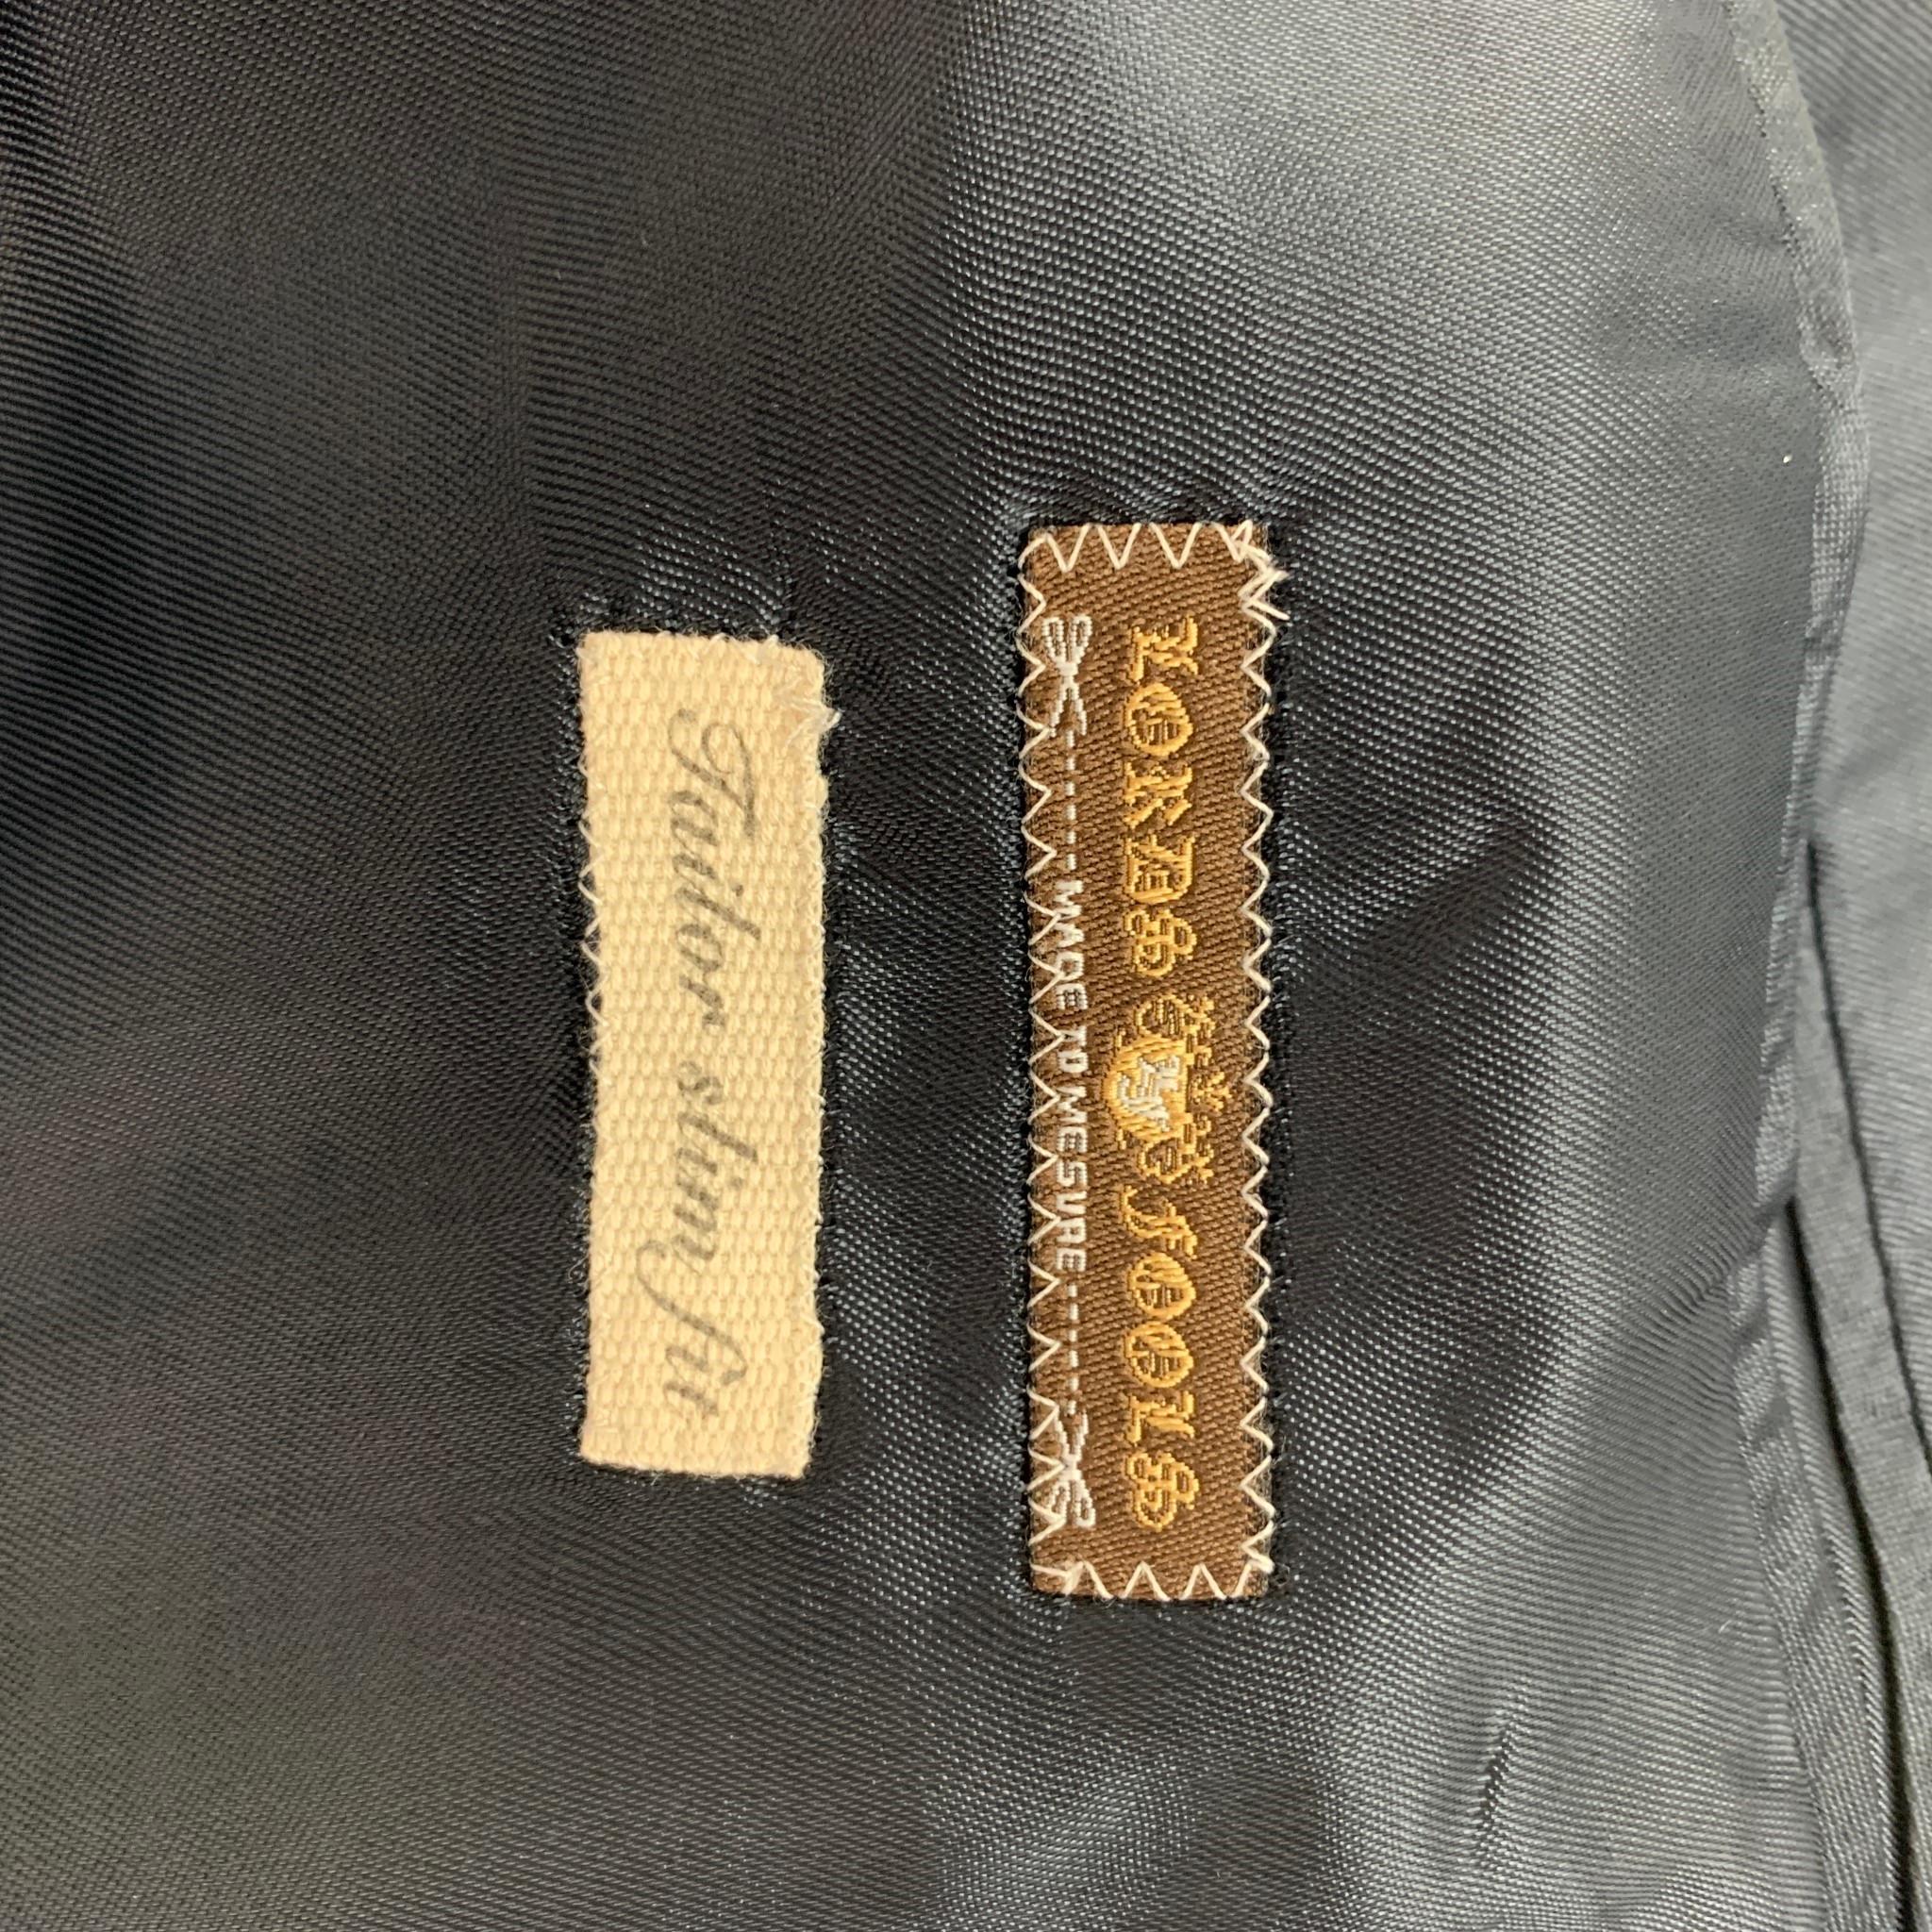 LORDS & FOOLS Tailleur de smoking à revers en laine mélangée noire marine texturée, taille 36 4